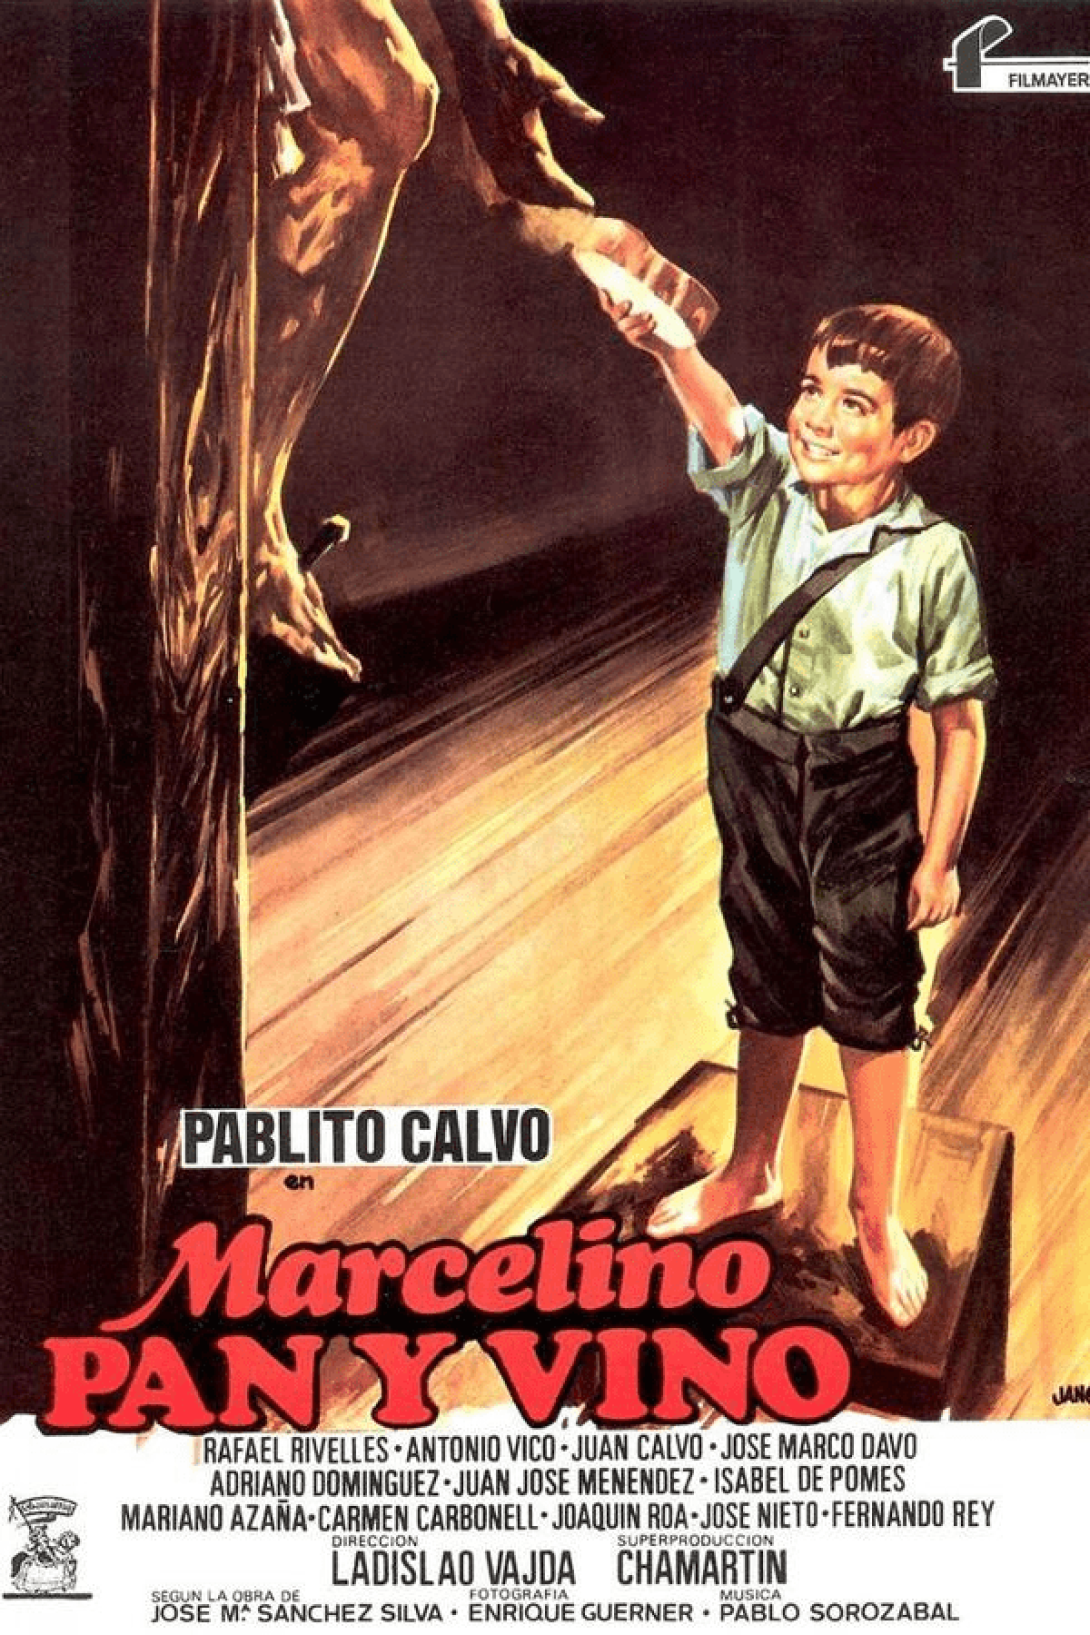 Cartel de la película "Marcelino, pan y vino" (1954).